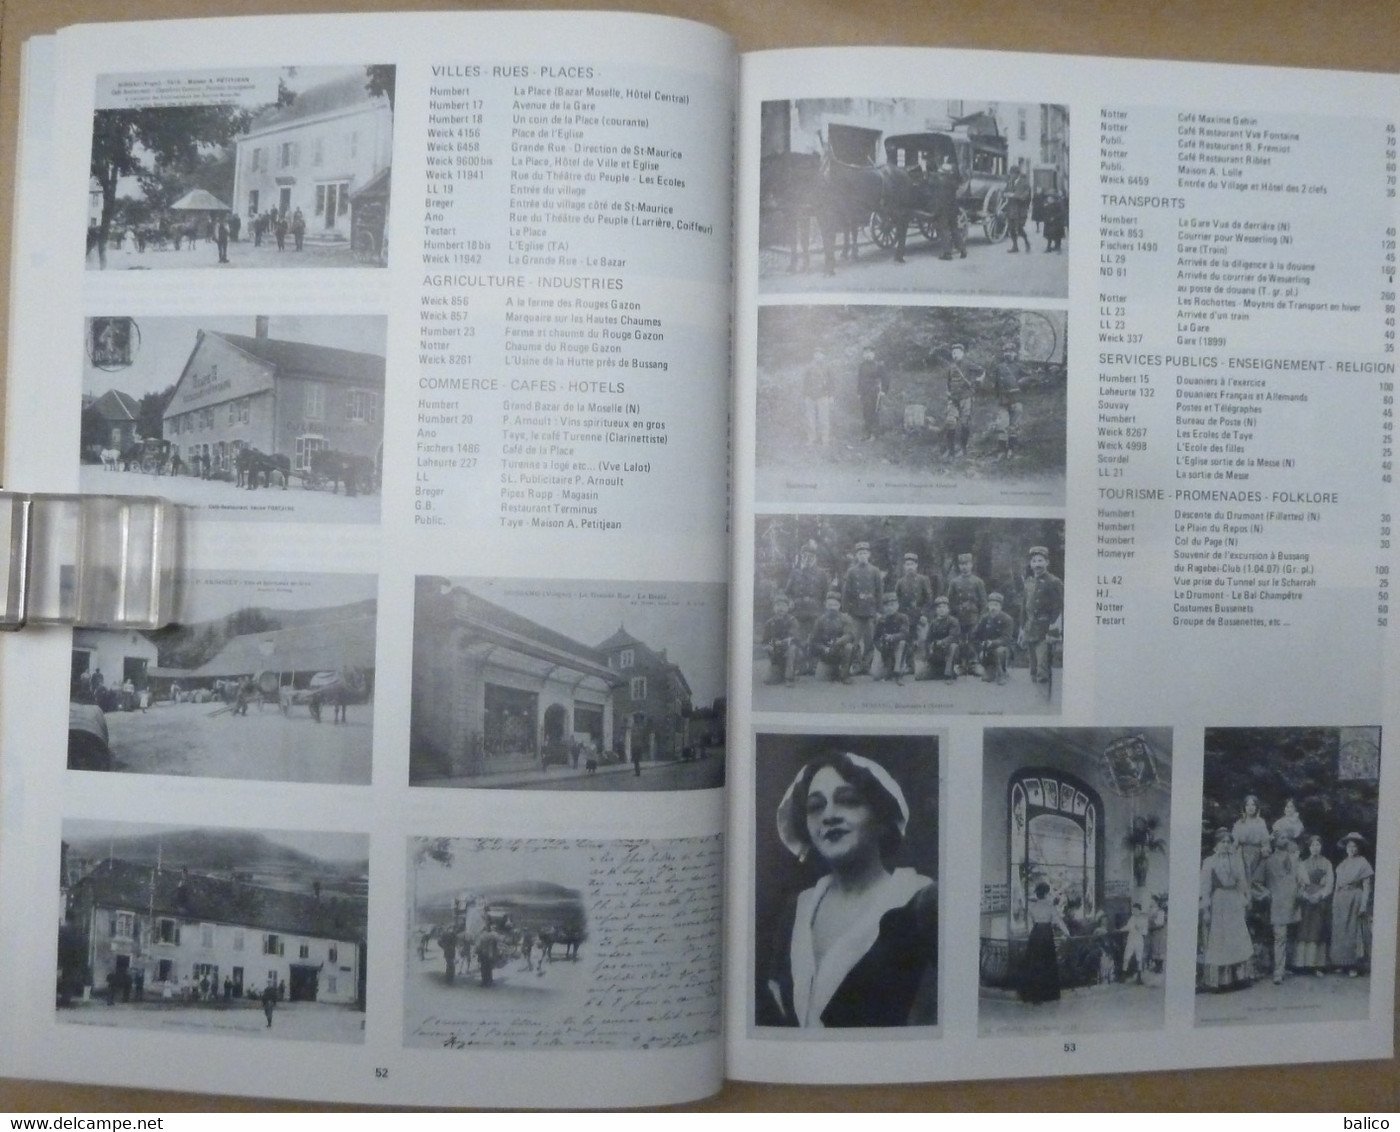 Argus de Cartes Postales Anciennes  "Les Vosges" -  300 Pages ( très bon état ) 20 pages sur 300 pour présentation !